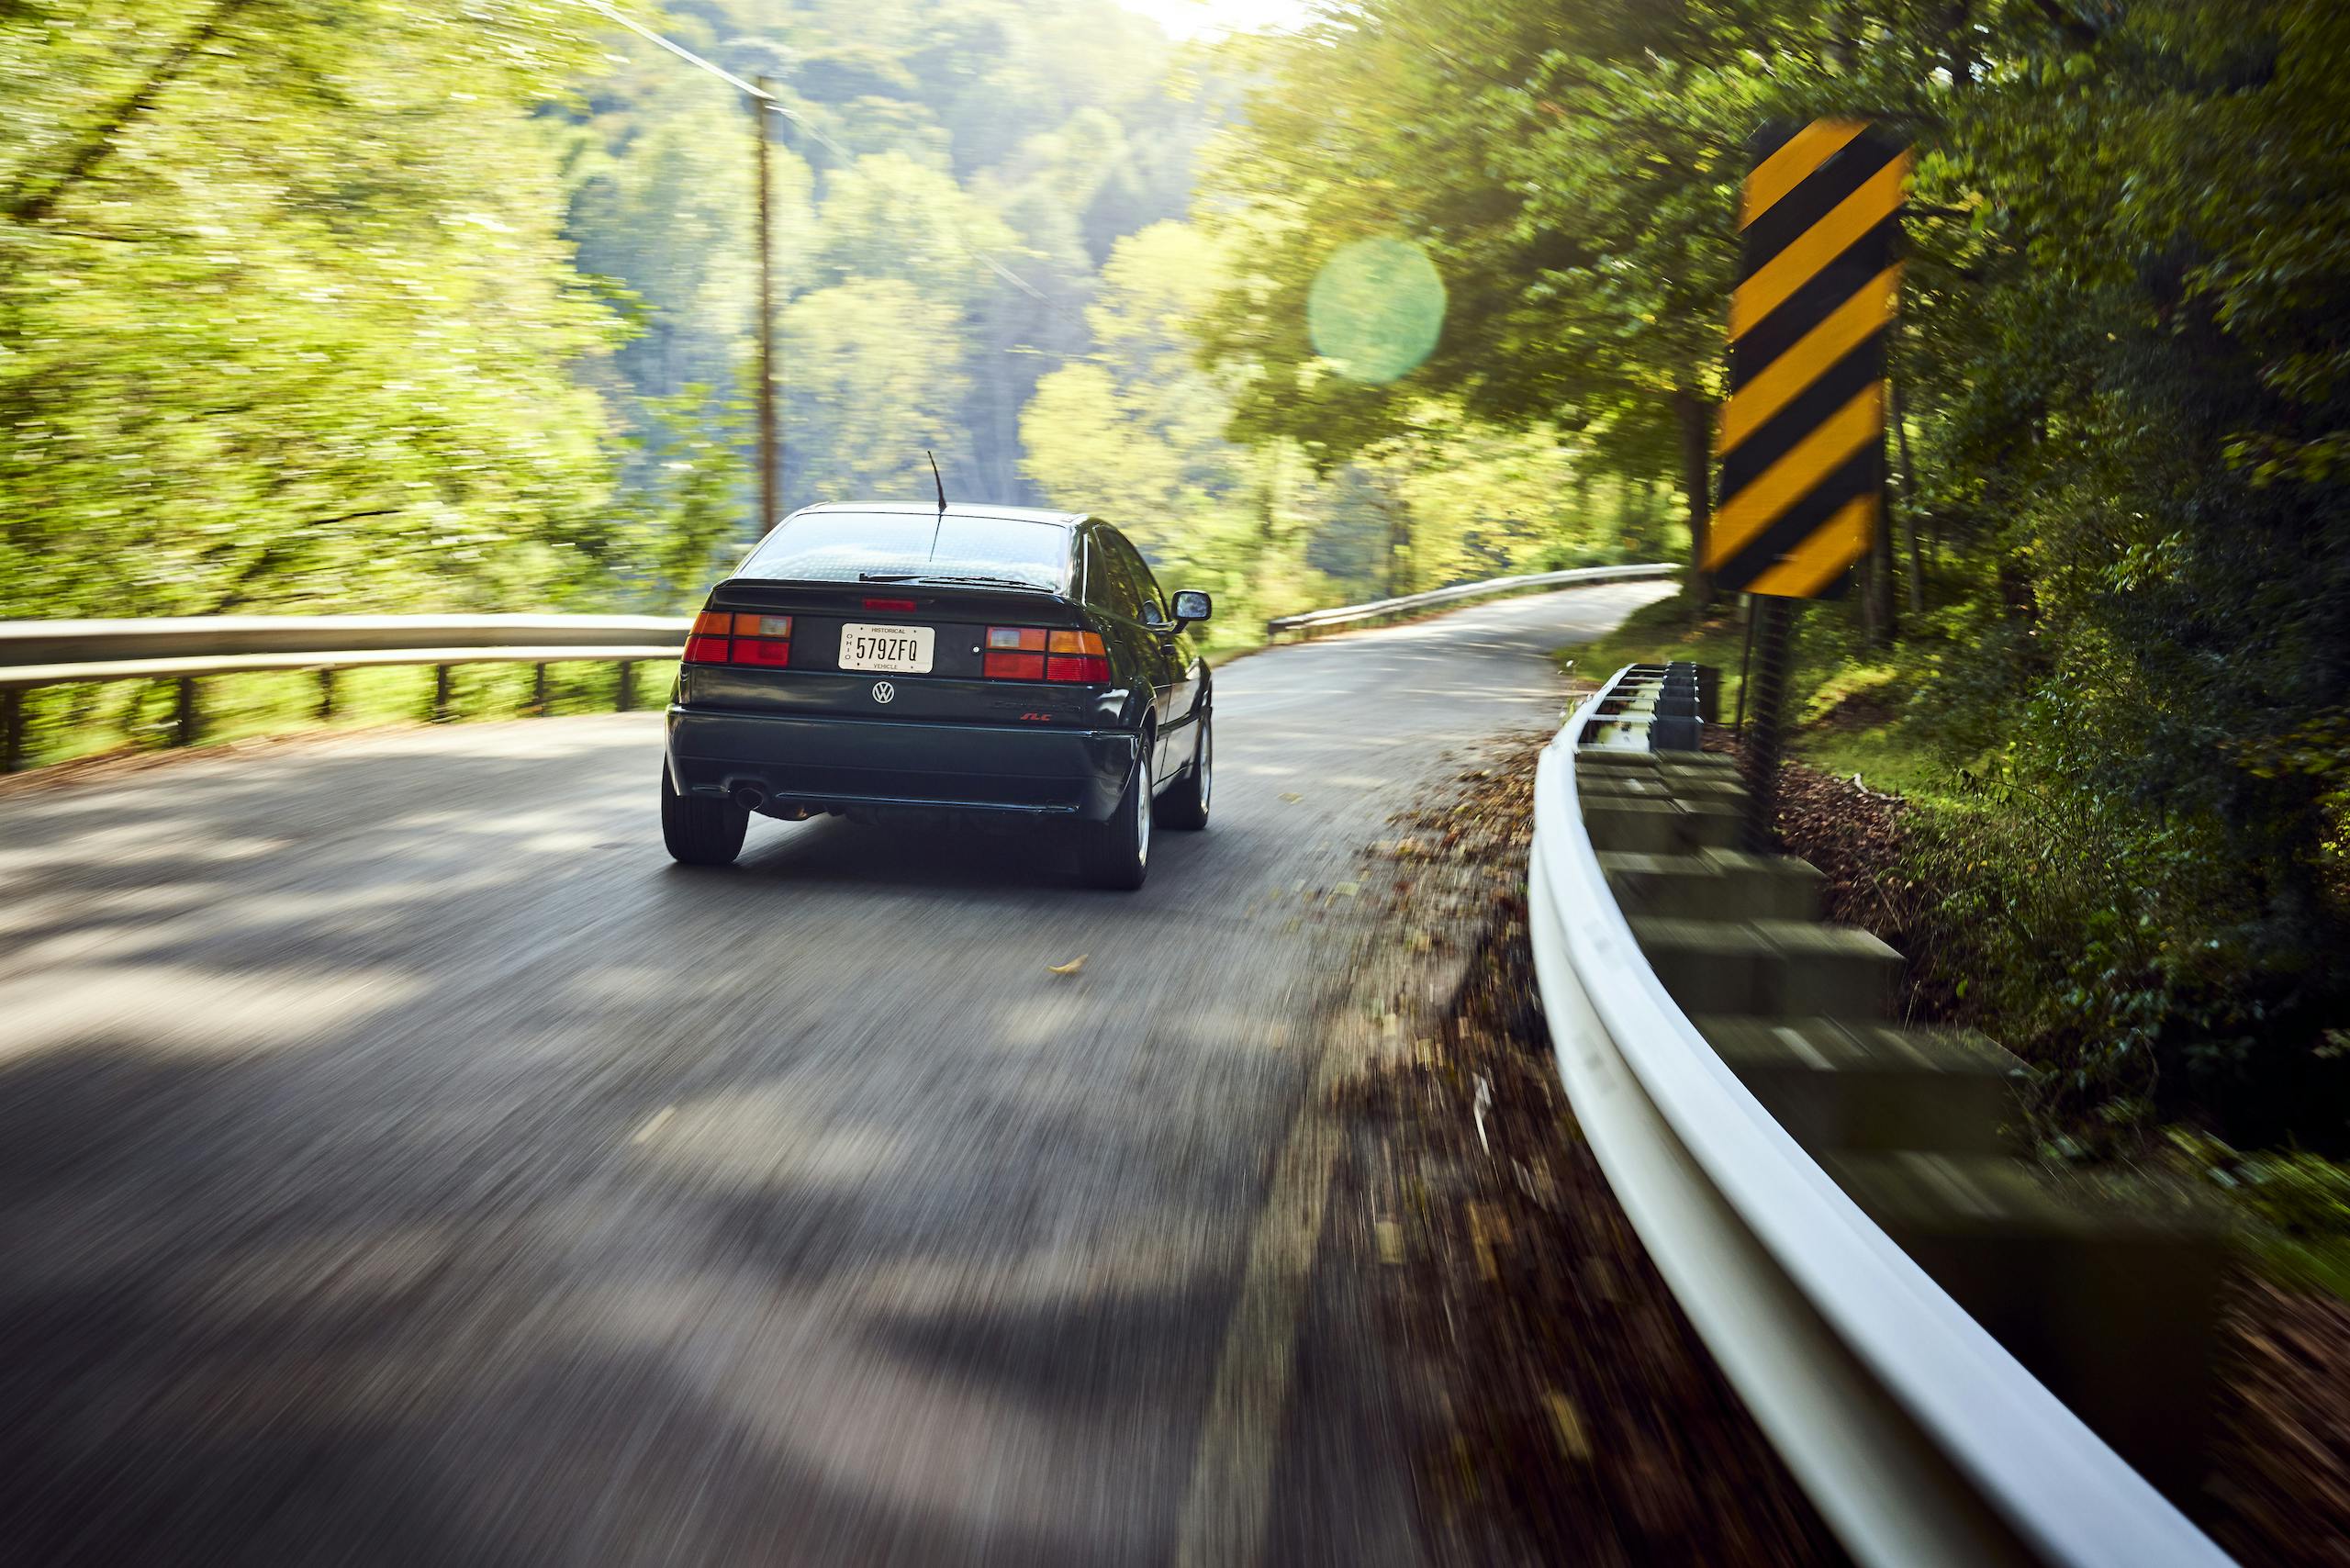 Volkswagen VW Corrado rear dynamic road action